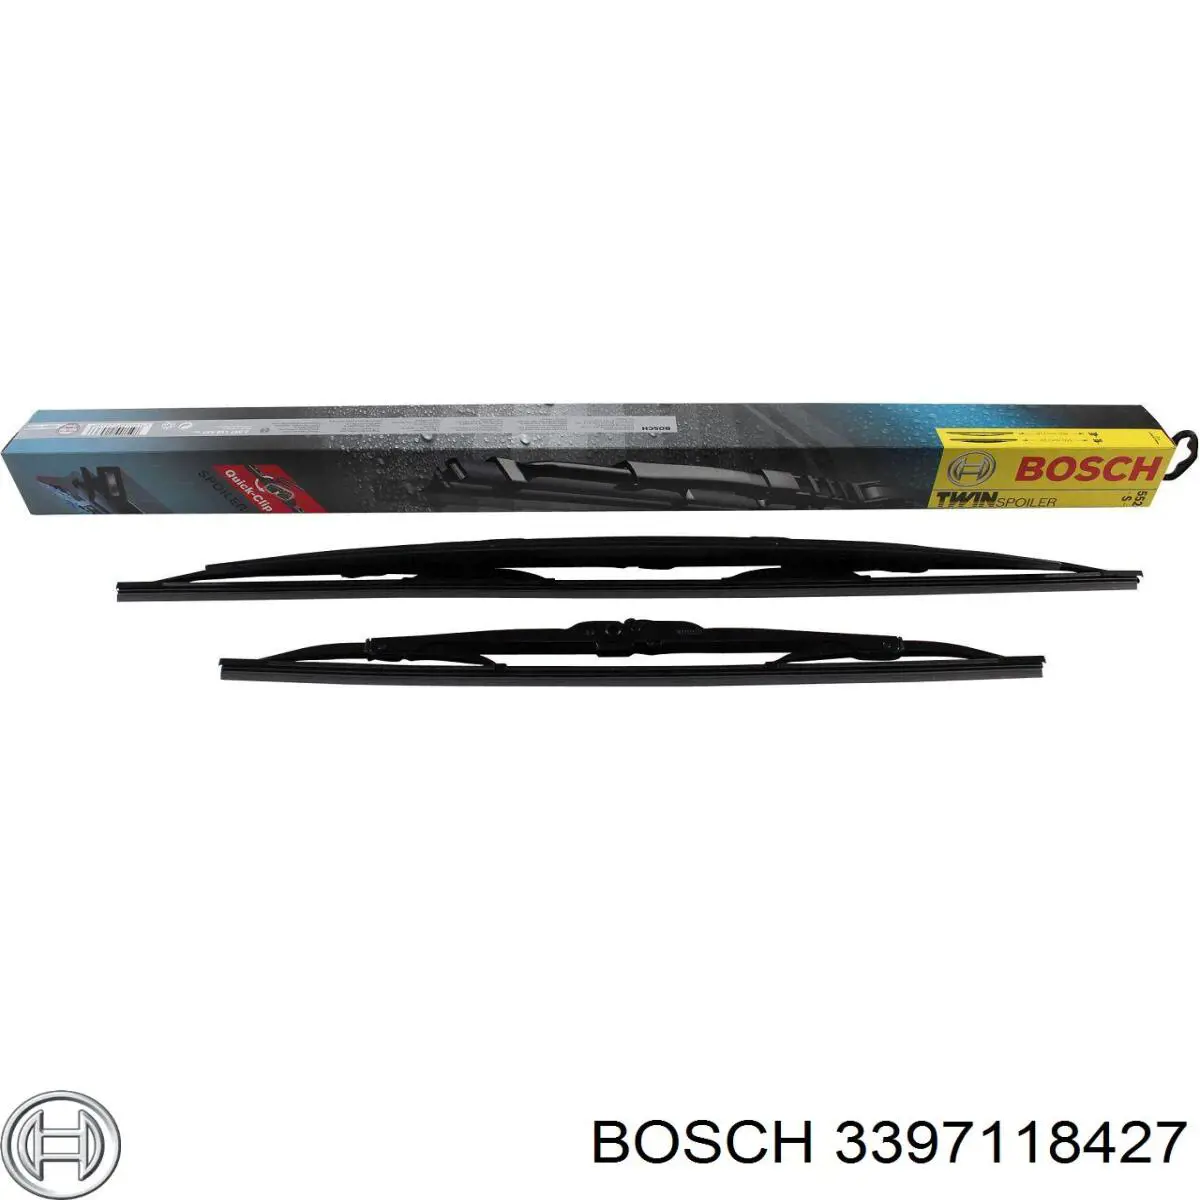 3397118427 Bosch limpiaparabrisas